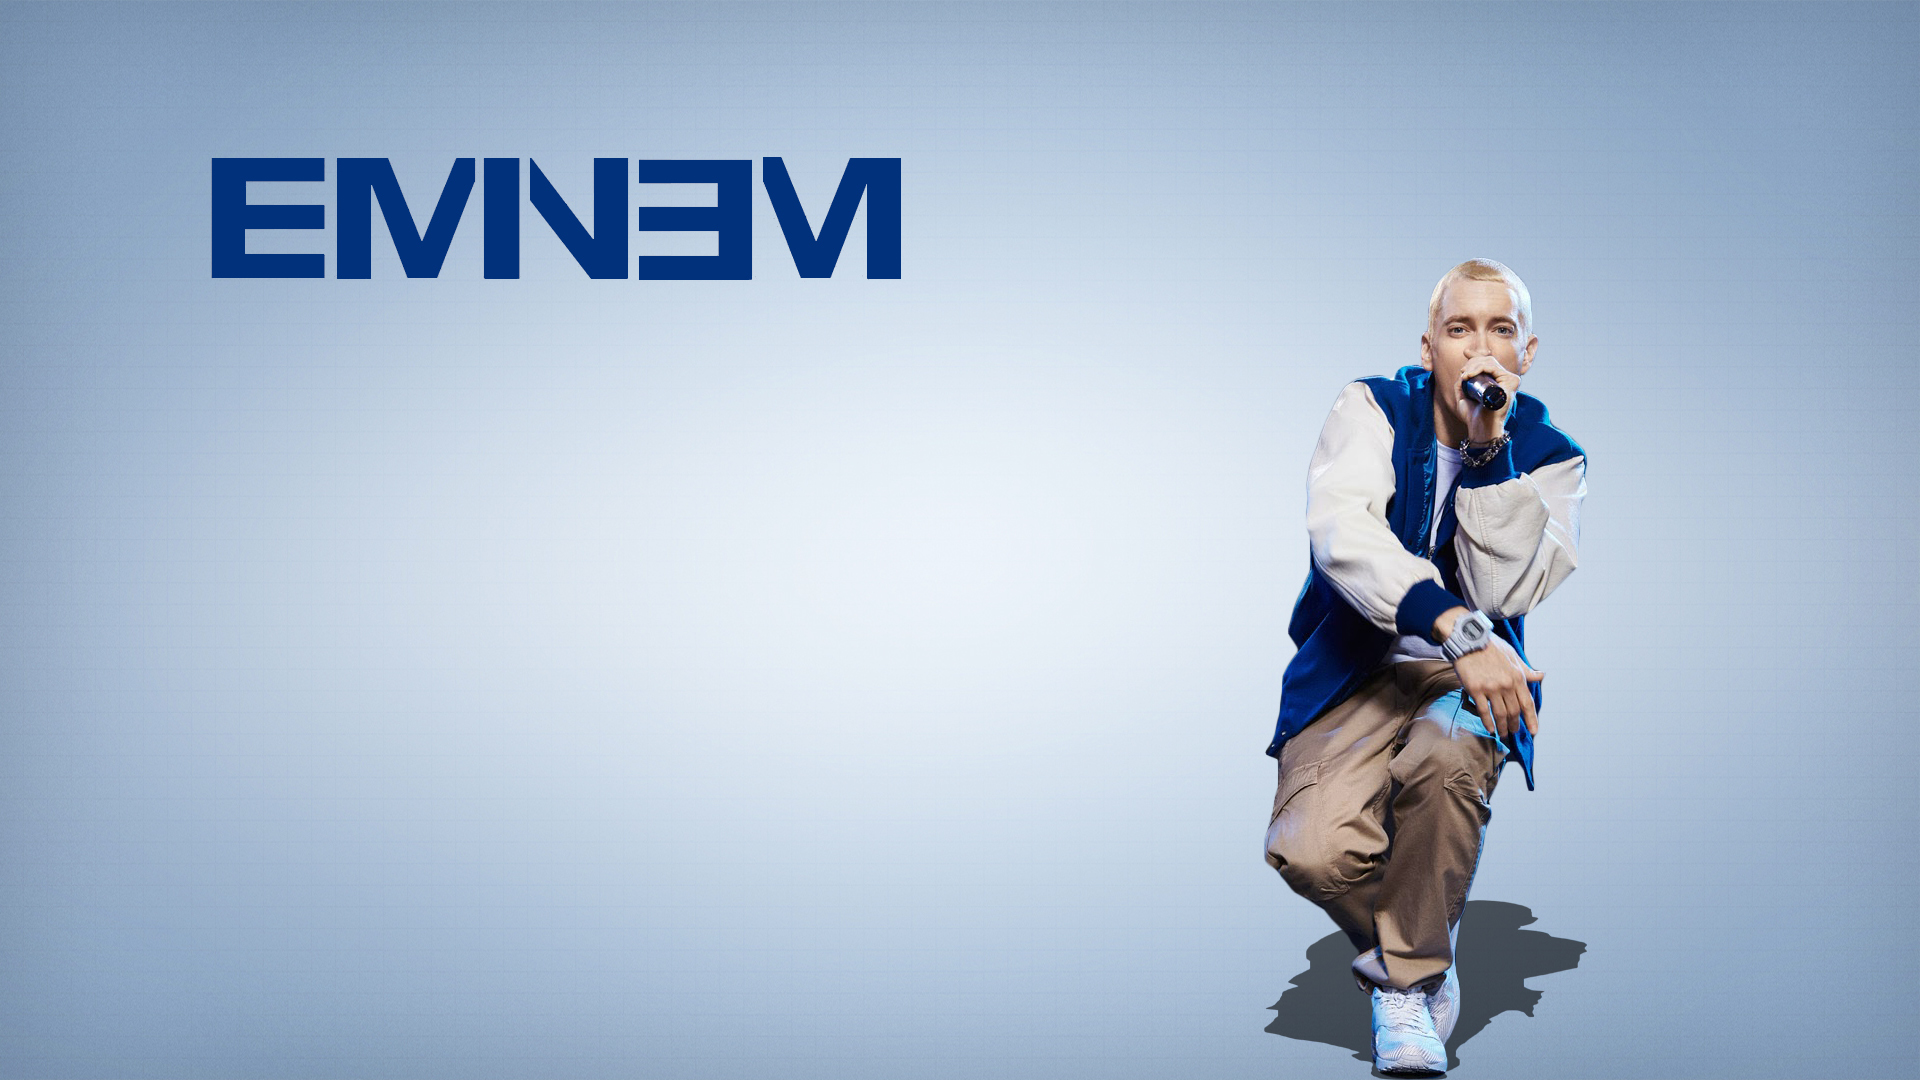 Eminem American Rapper1141210976 - Eminem American Rapper - This, Rapper, Eminem, American